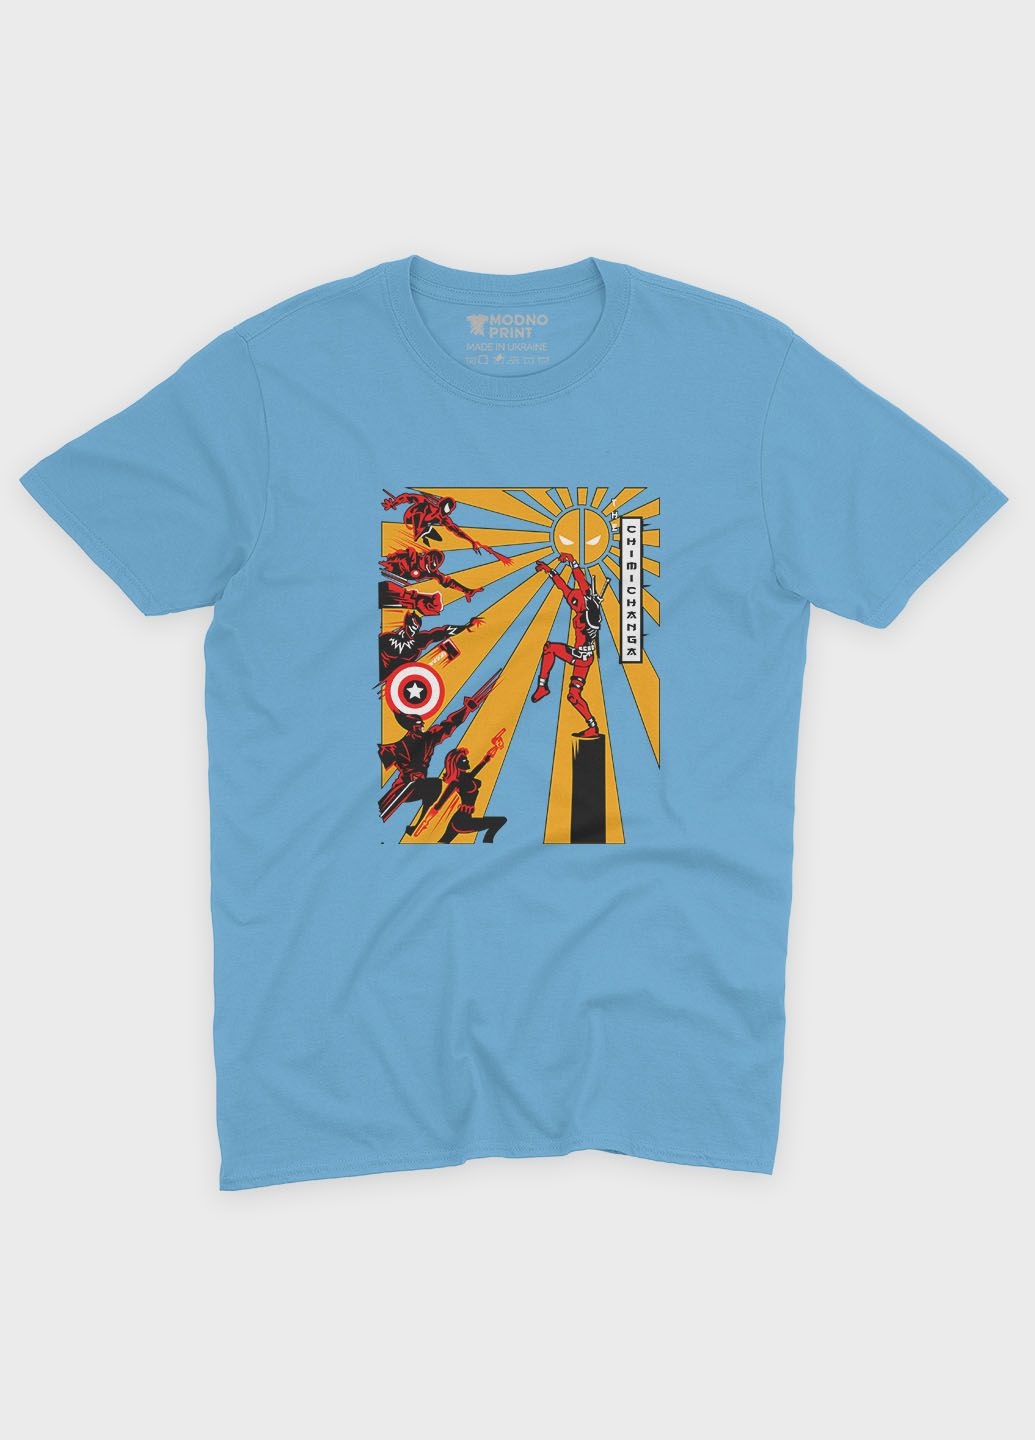 Голубая демисезонная футболка для мальчика с принтом антигероя - дедпул (ts001-1-lbl-006-015-020-b) Modno